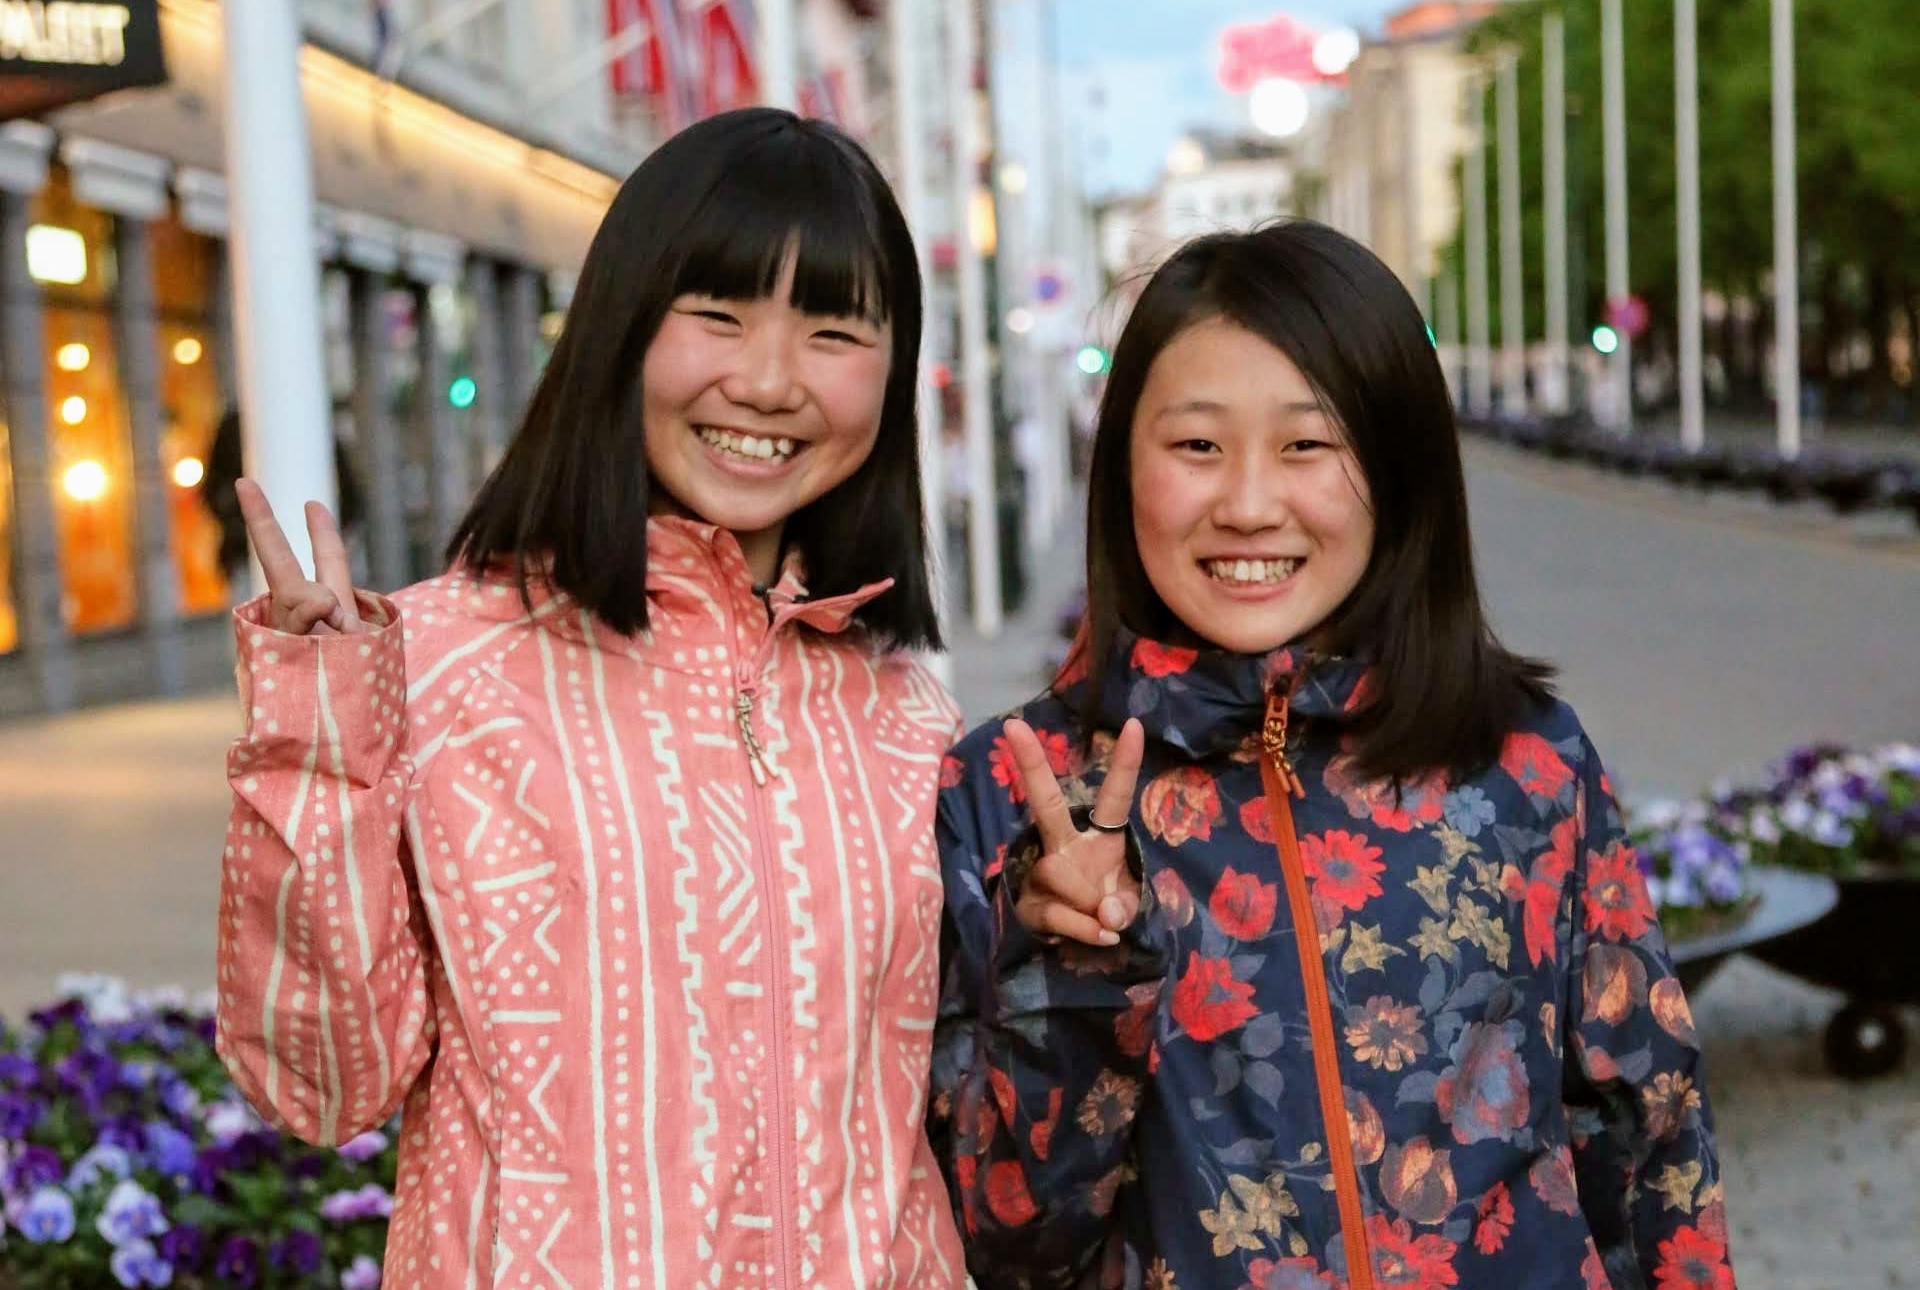 村瀬心椛 独占インタビュー「13歳のビッグエア世界女王が日本から誕生した理由」 | BACKSIDE (バックサイド) | スノーボード・ウェブマガジン